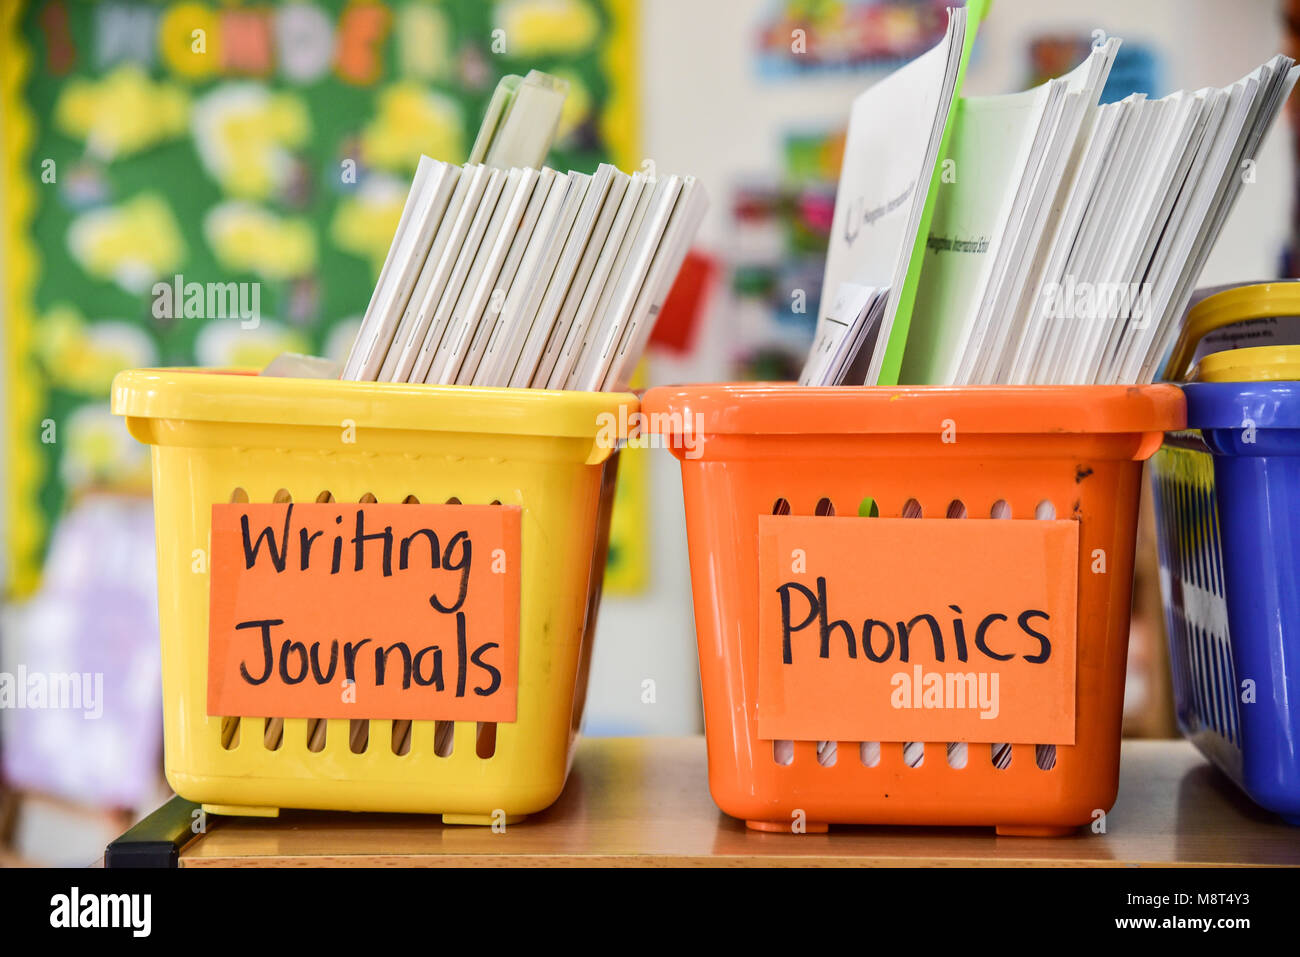 Zwei helle, farbenfrohe Körbe in der frühen Kindheit Klassenzimmer. Man sagt," schreiben Zeitschriften' und der andere sagt "phonics". Stockfoto